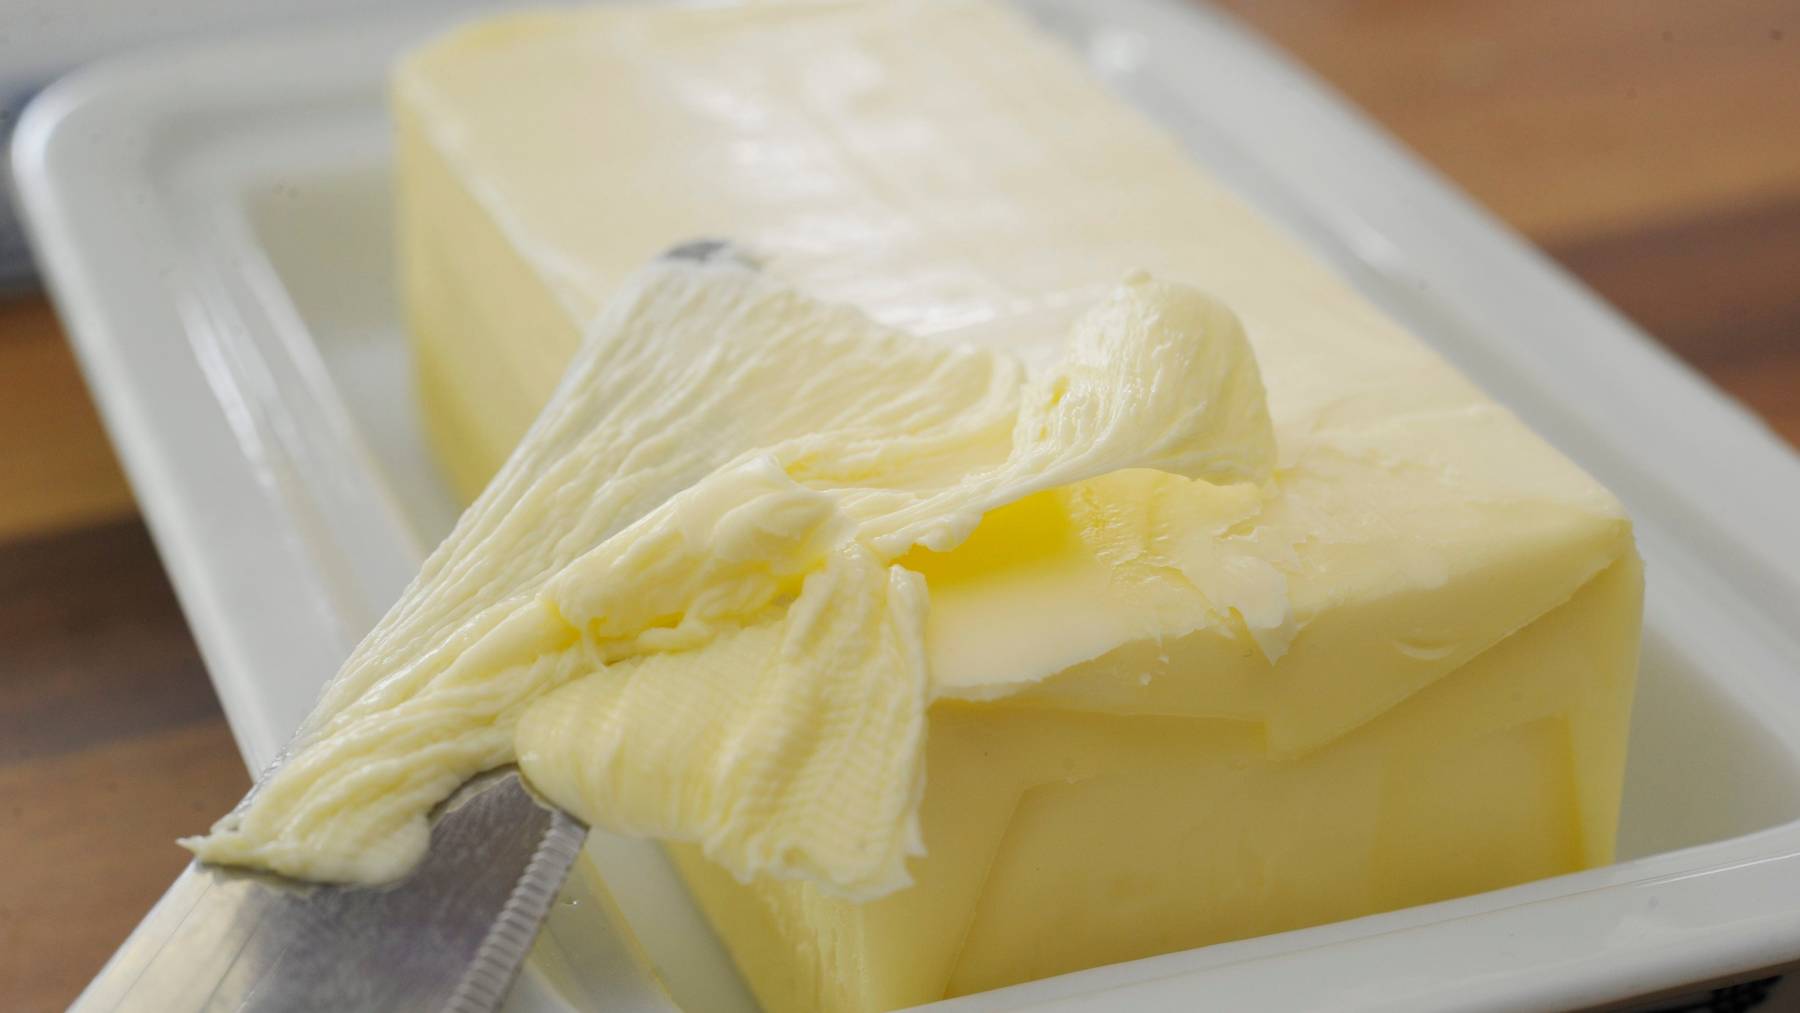 Der Bund will einen Engpass bei Butter verhindern und fördert deshalb den Import.